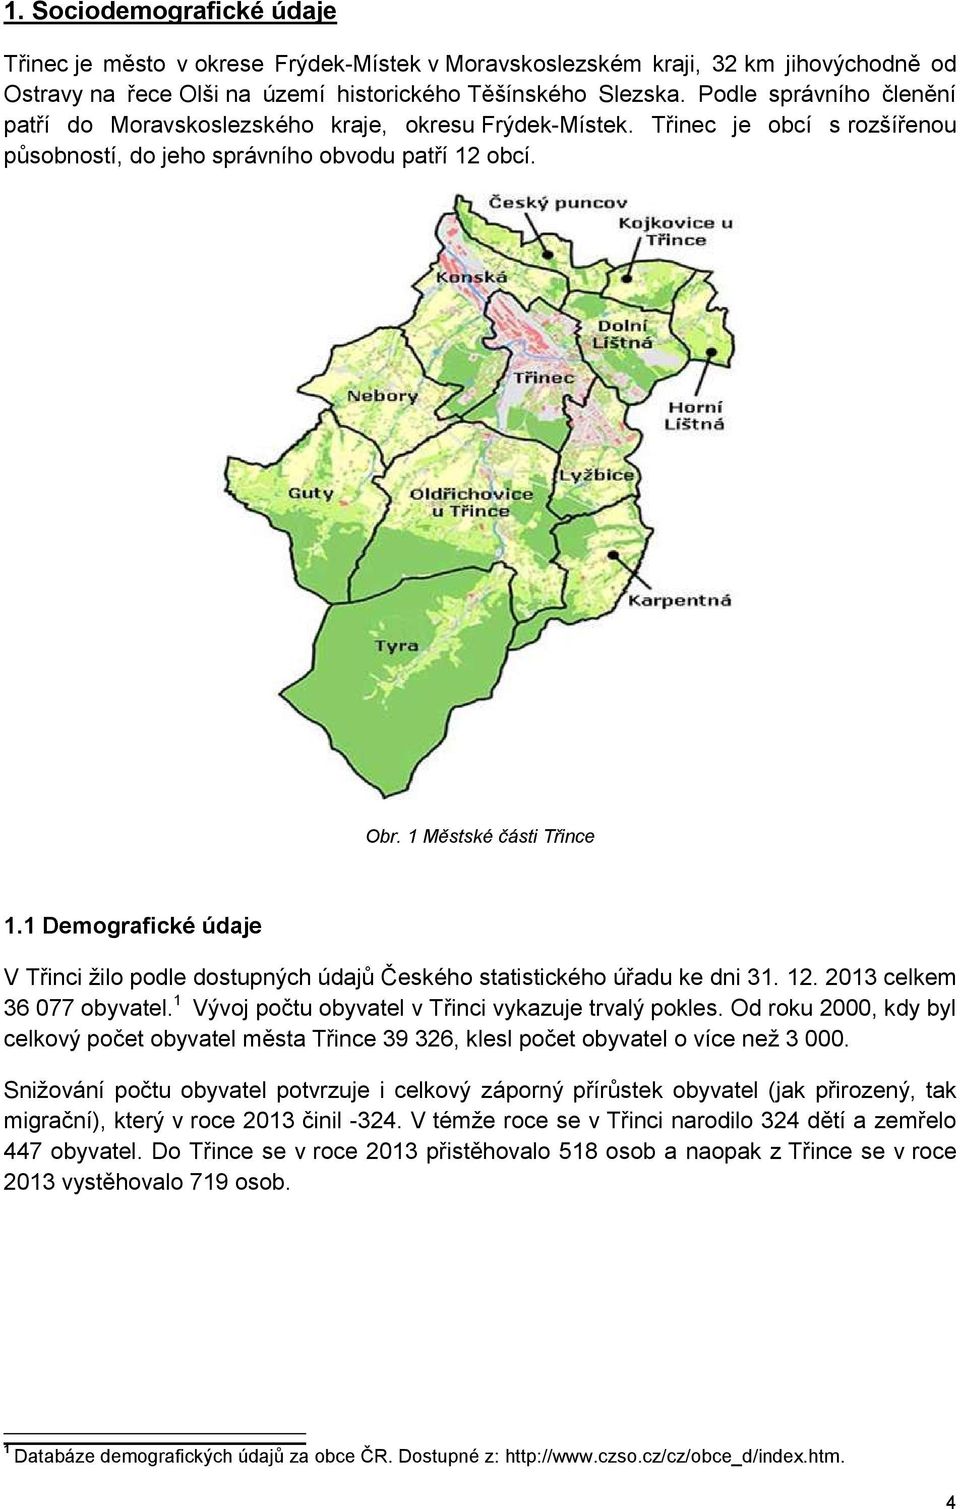 1 Demografické údaje V Třinci žilo podle dostupných údajů Českého statistického úřadu ke dni 31. 12. 2013 celkem 36 077 obyvatel. 1 Vývoj počtu obyvatel v Třinci vykazuje trvalý pokles.